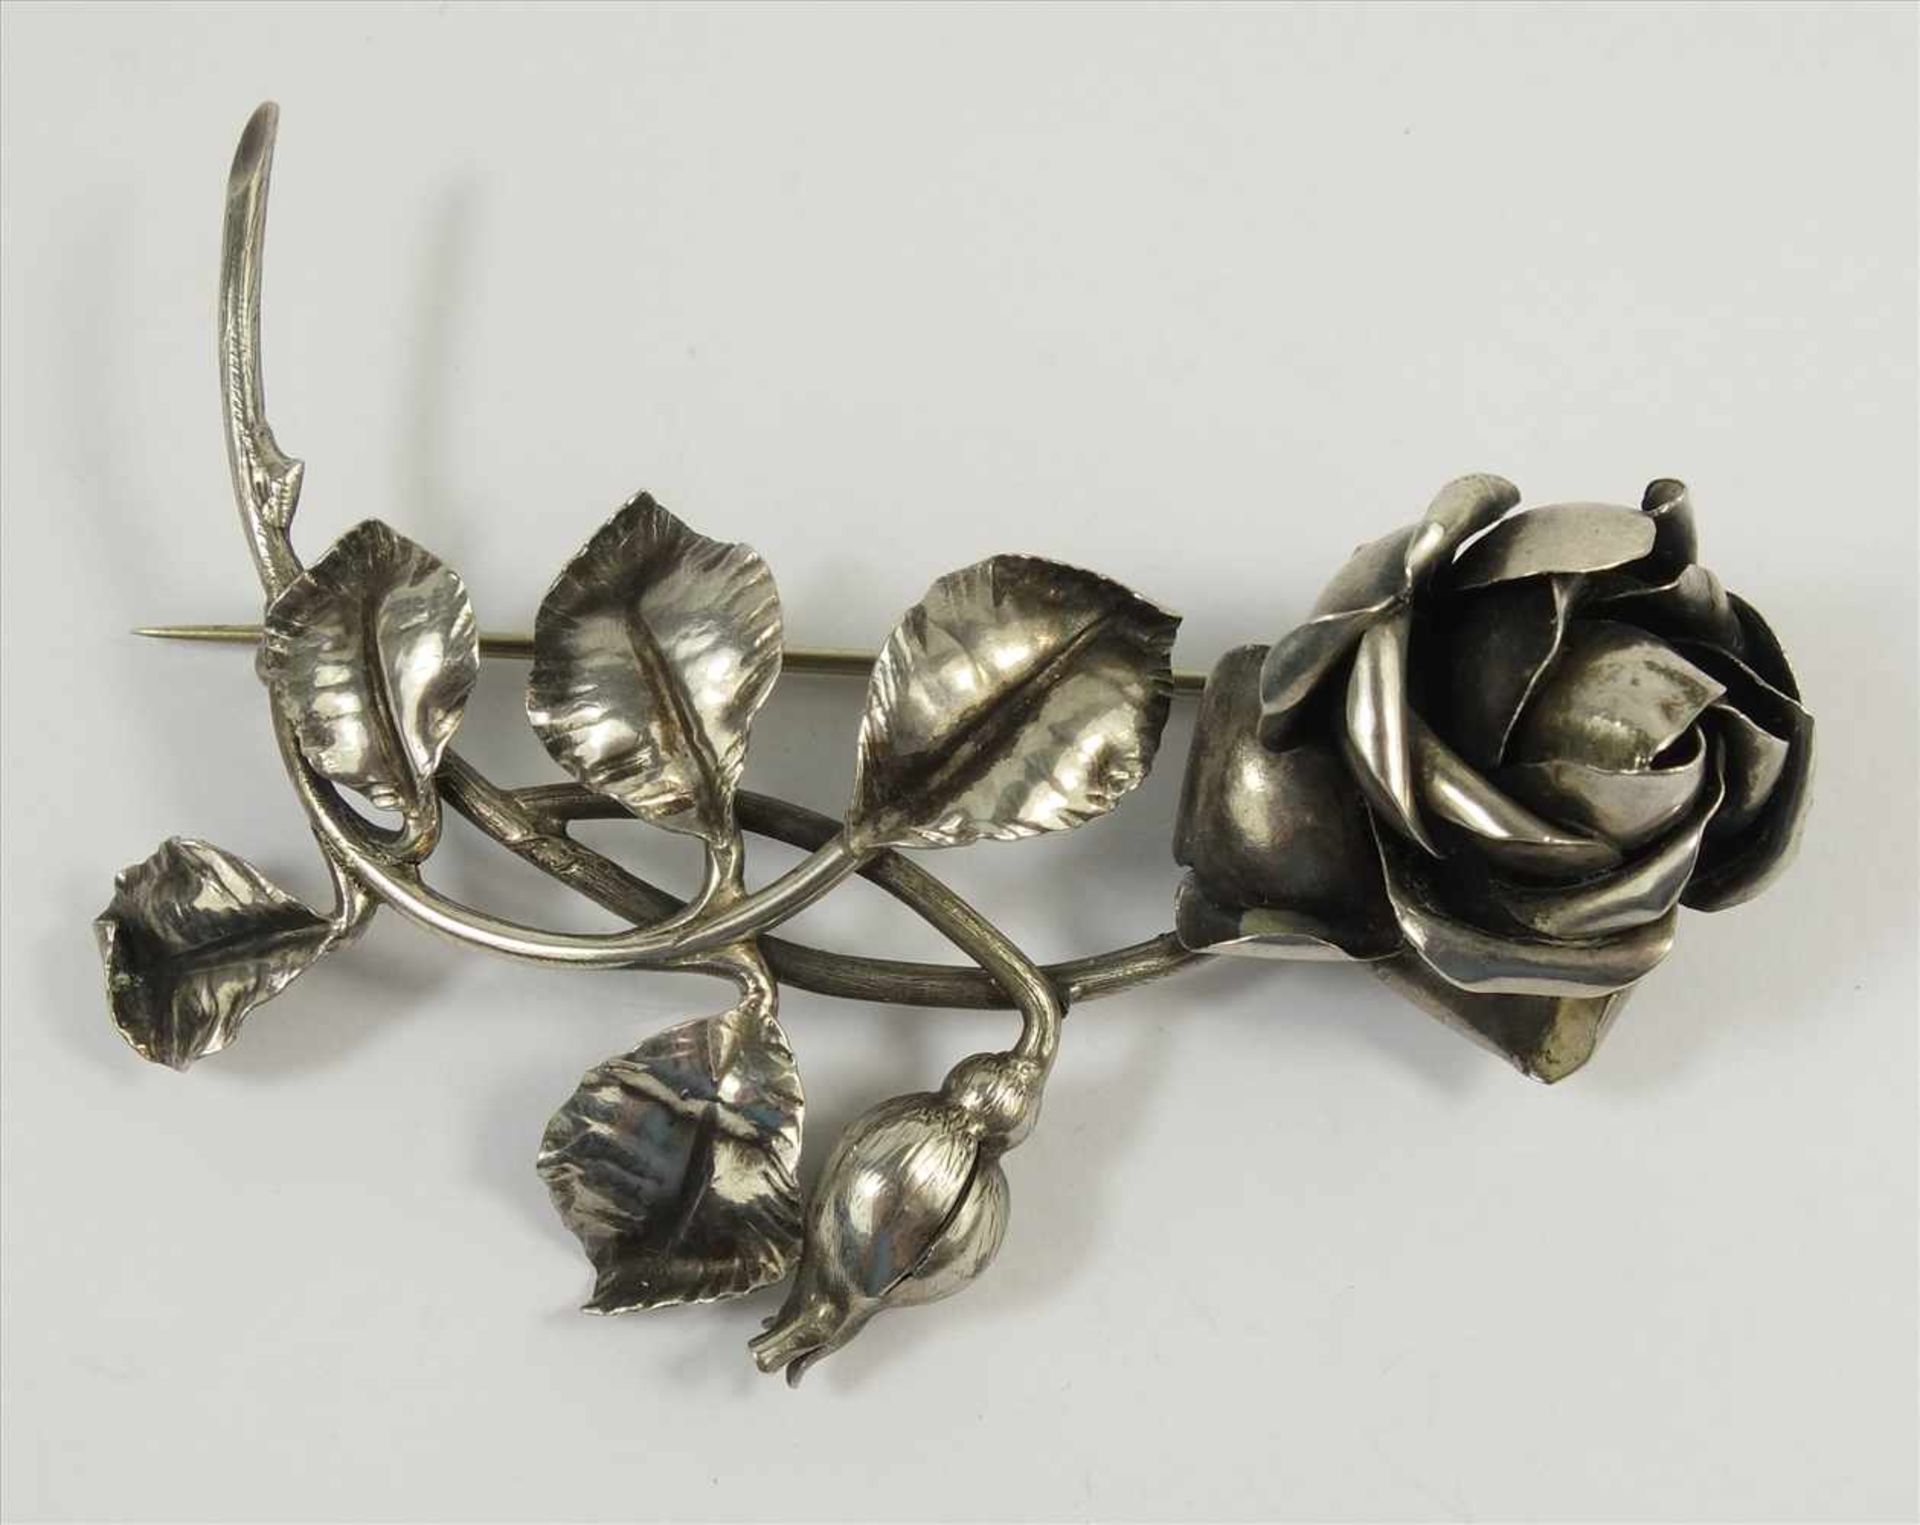 Brosche Rose, 800 Silber, Gew.14,36g, diverse Punzen, vollplastische Darstellung einer Rose mit